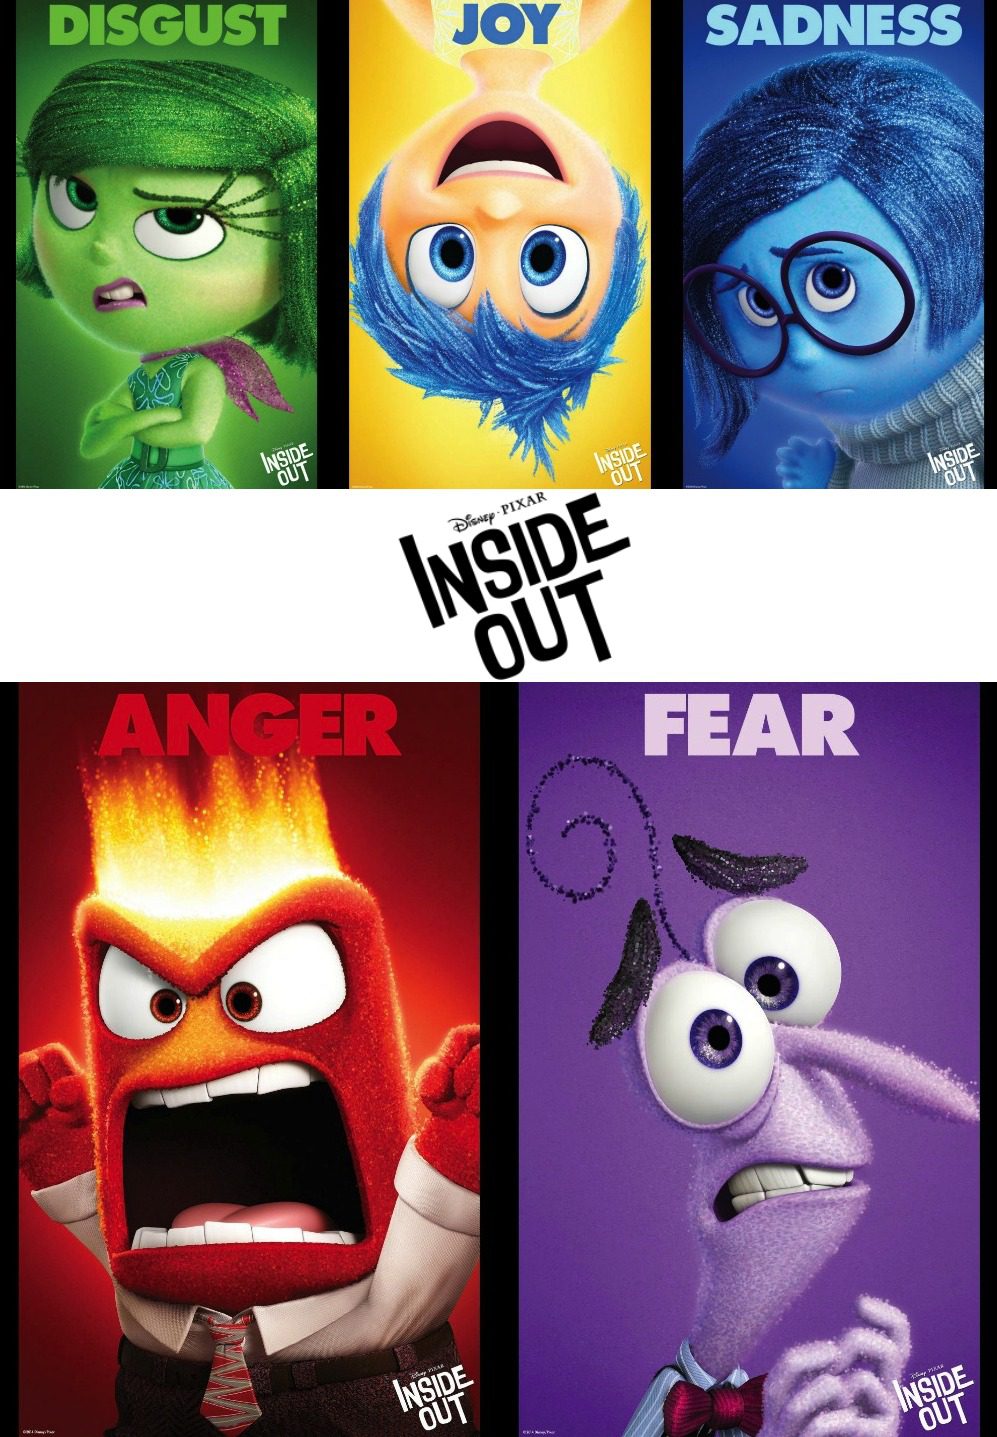 pixar inside out